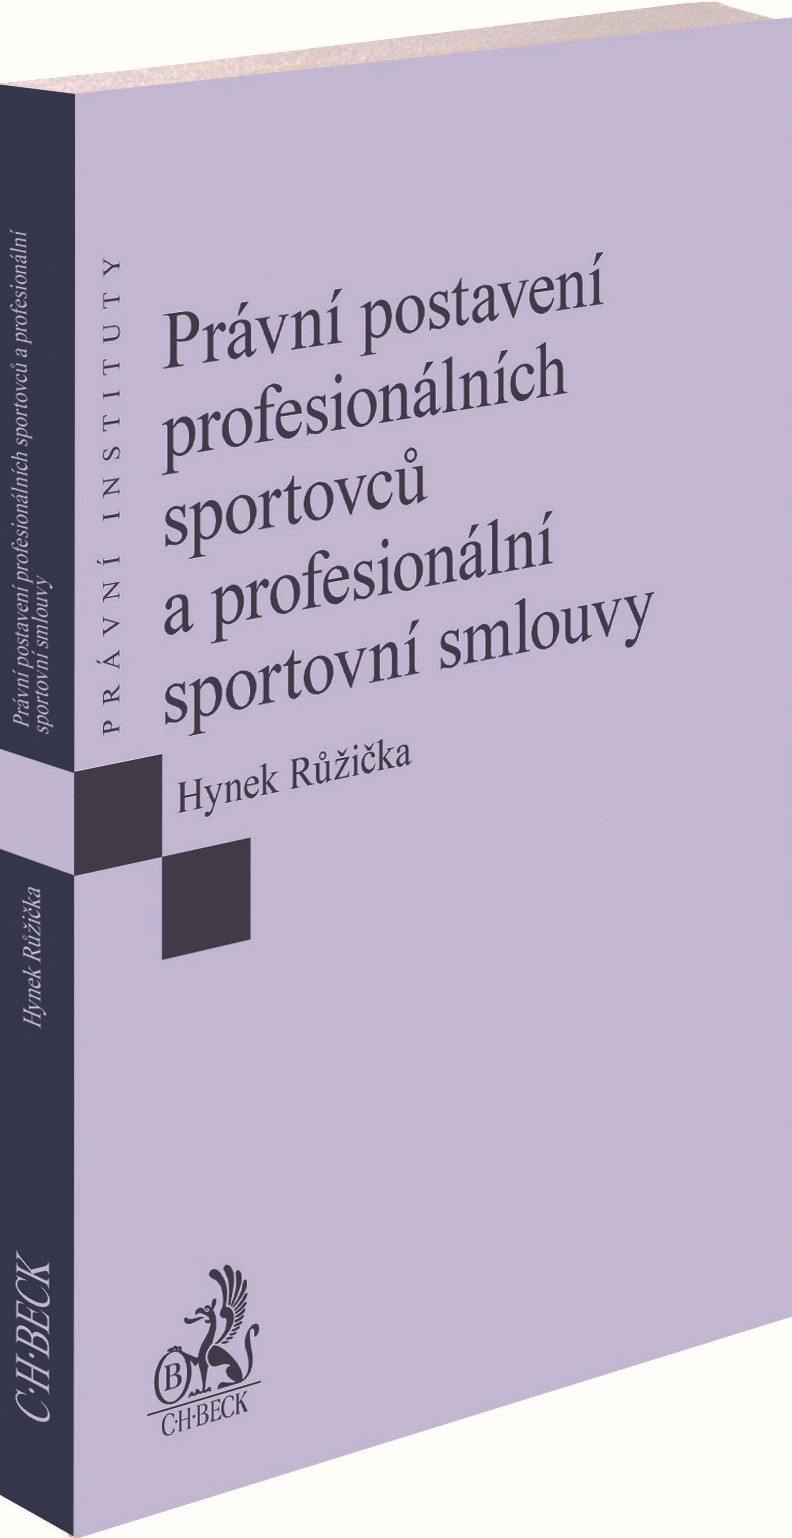 Právní postavení profesionálních sportovců a profesionální sportovní smlouvy